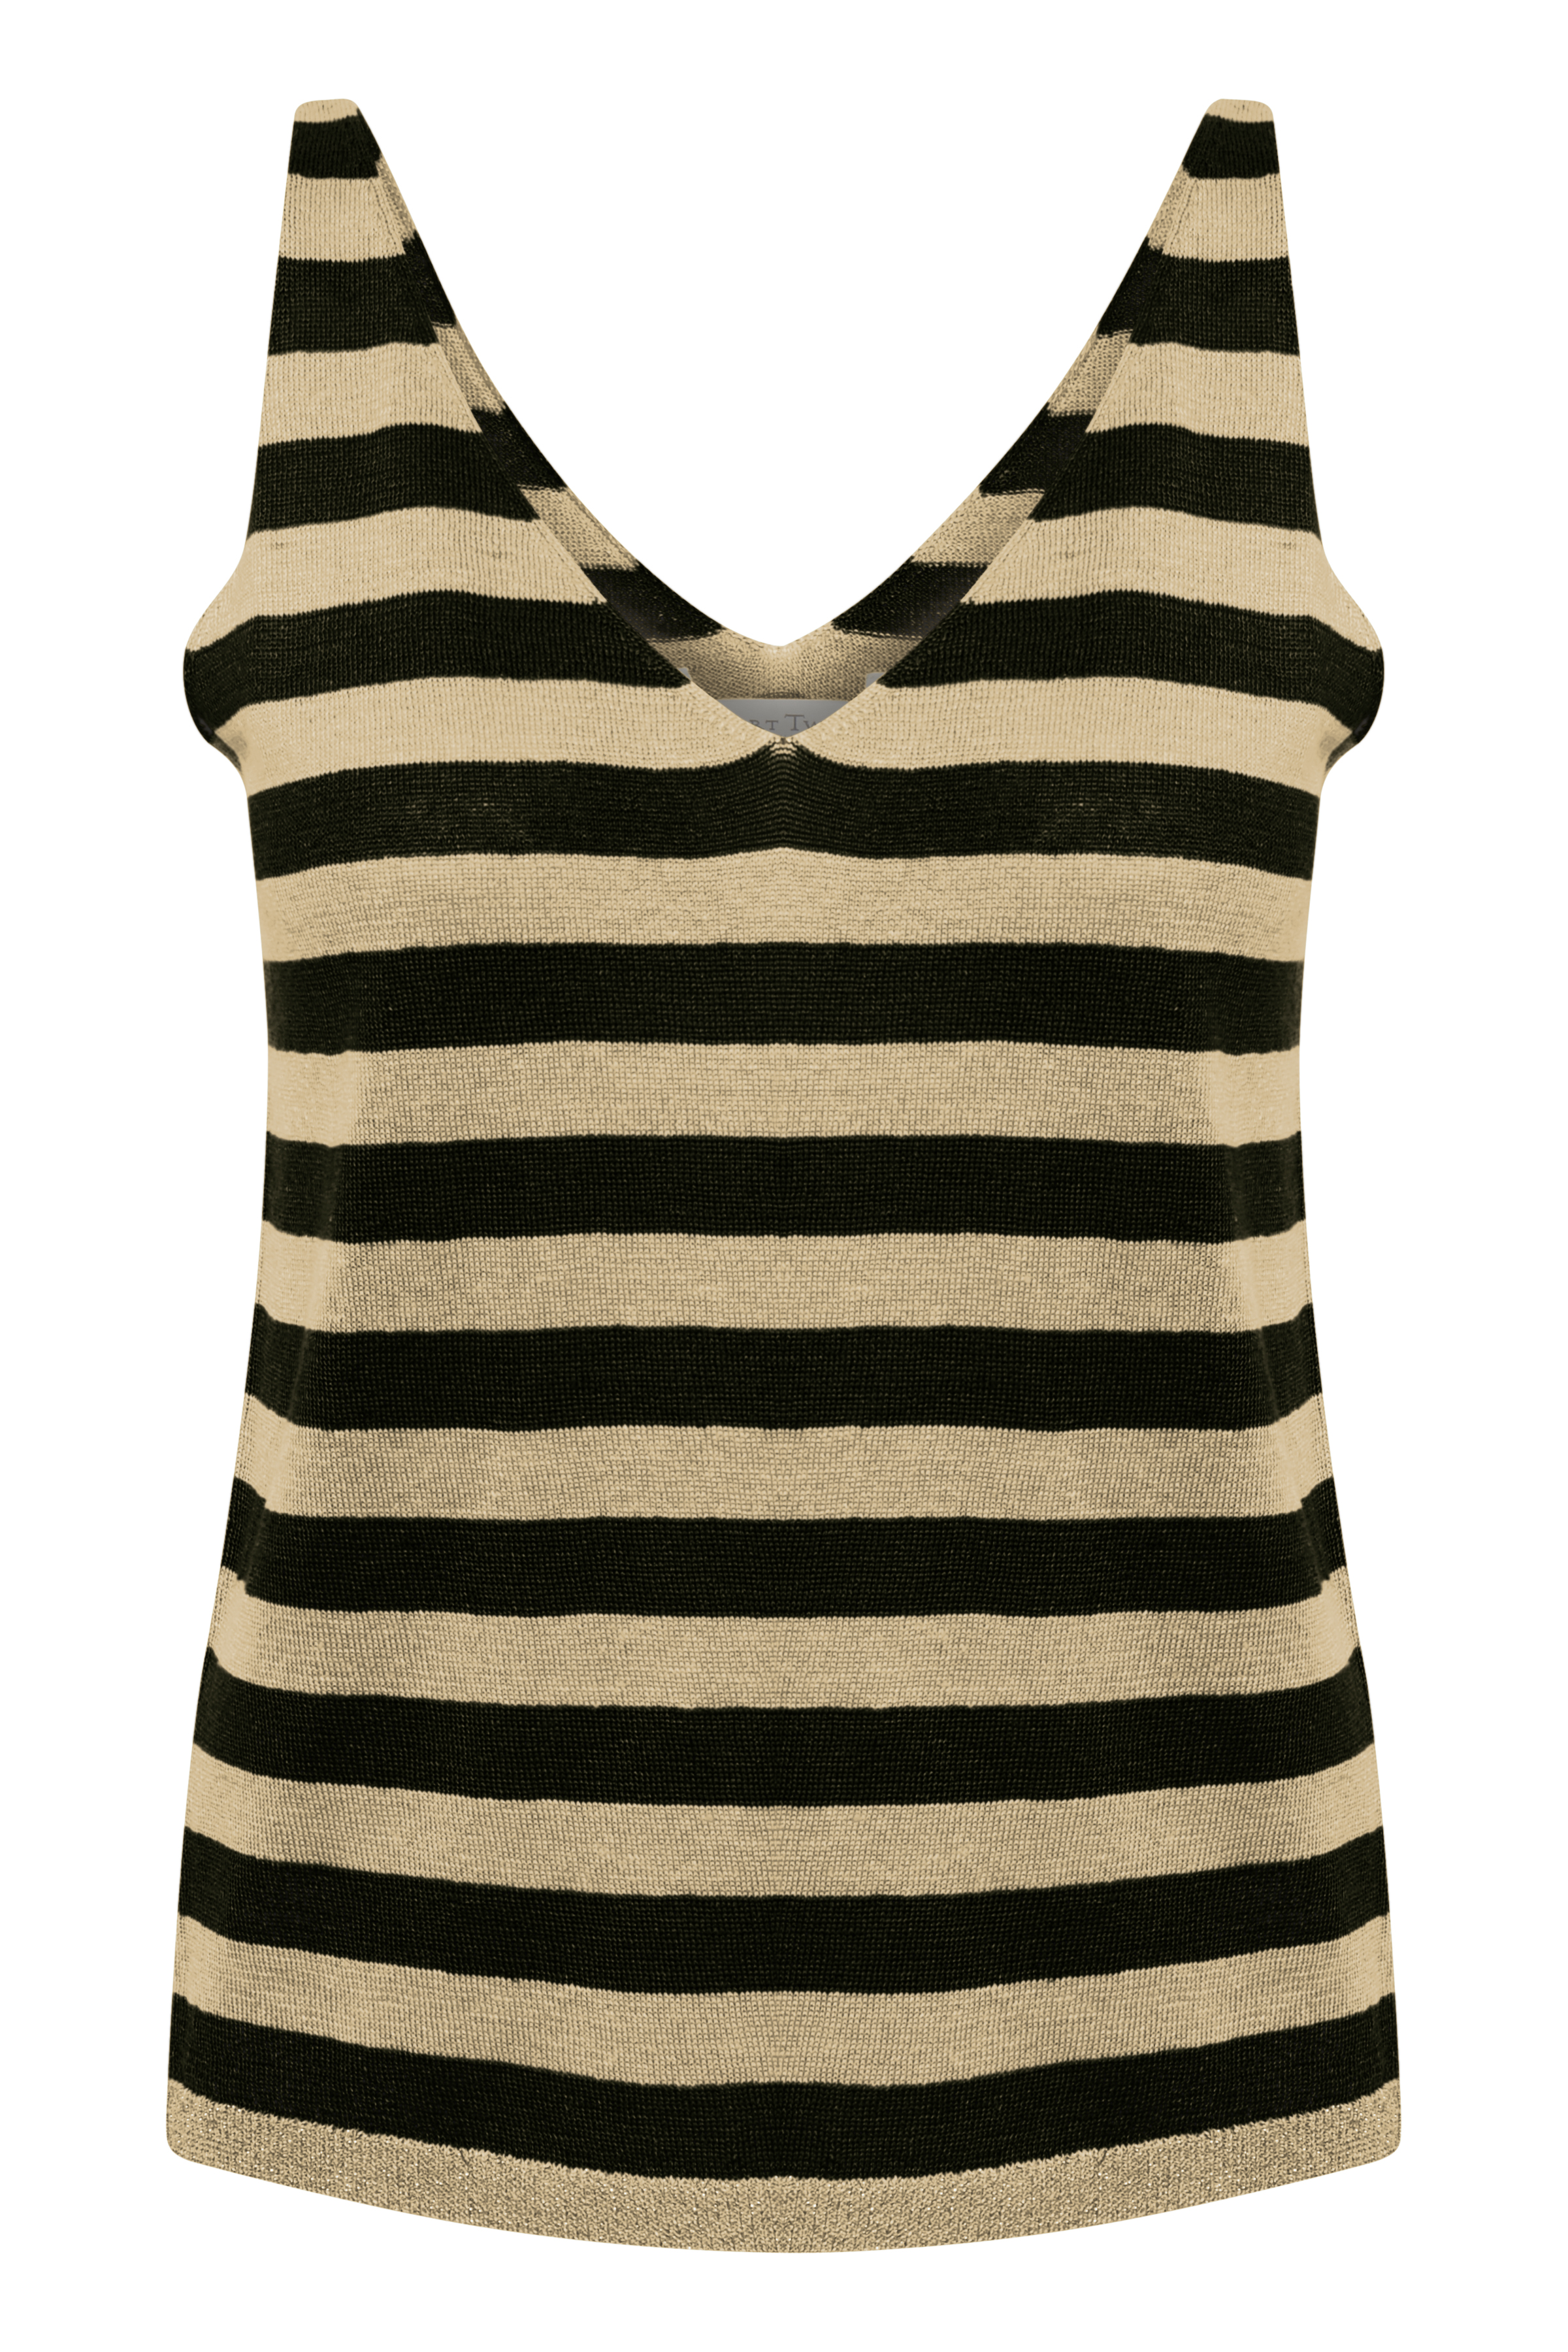 Part Two sweatere strik – Part Two Dame Strikpullover Linen Stripe, Black til dame Guld - Pashion.dk